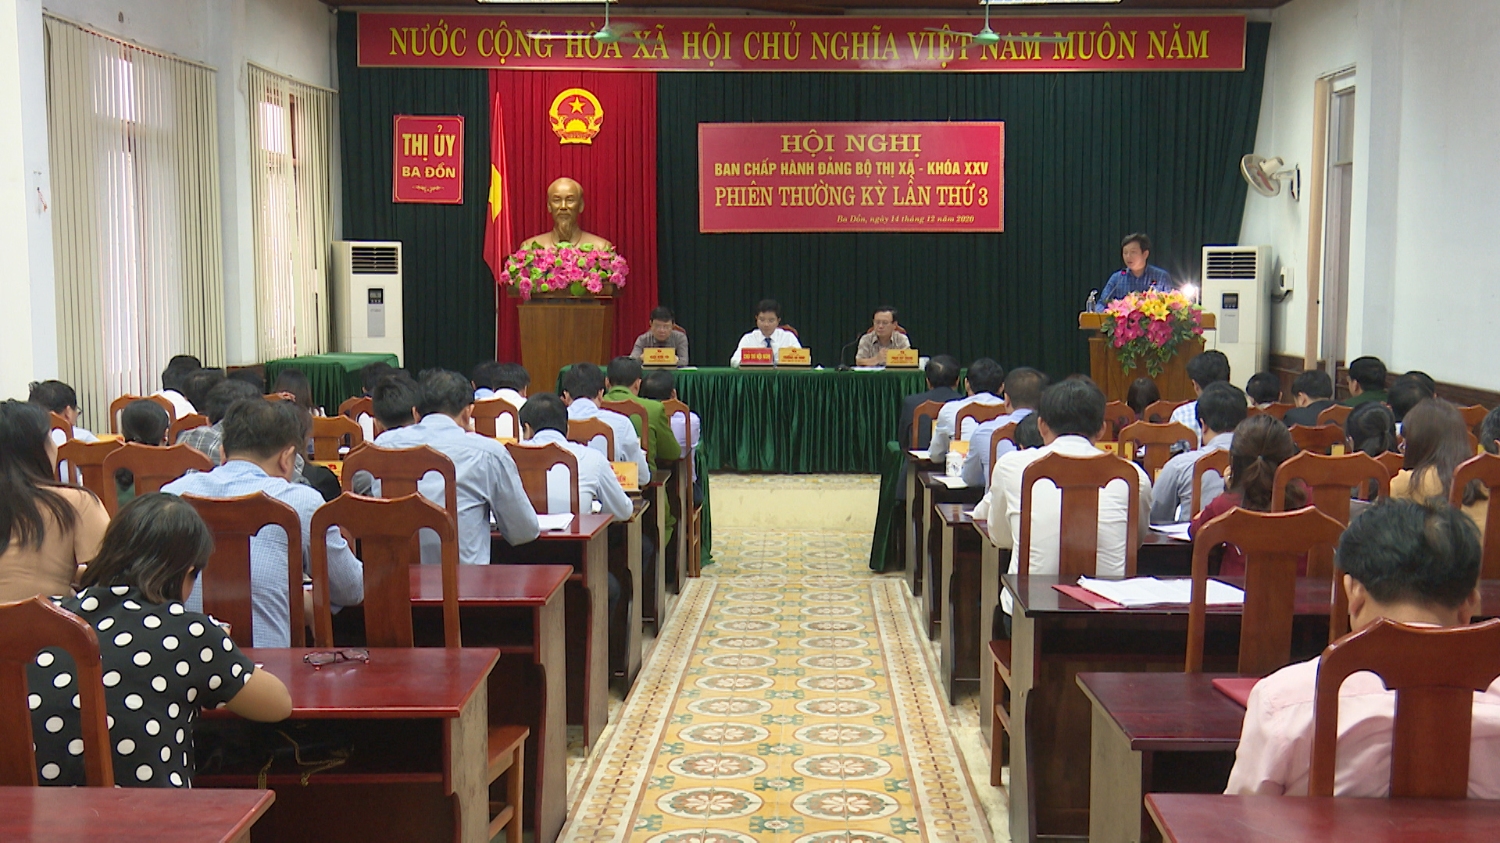 Toàn cảnh Hội nghị Ban Chấp hành Đảng bộ thị xã Ba Đồn- khóa XXV họp phiên thường kỳ lần thứ 3.